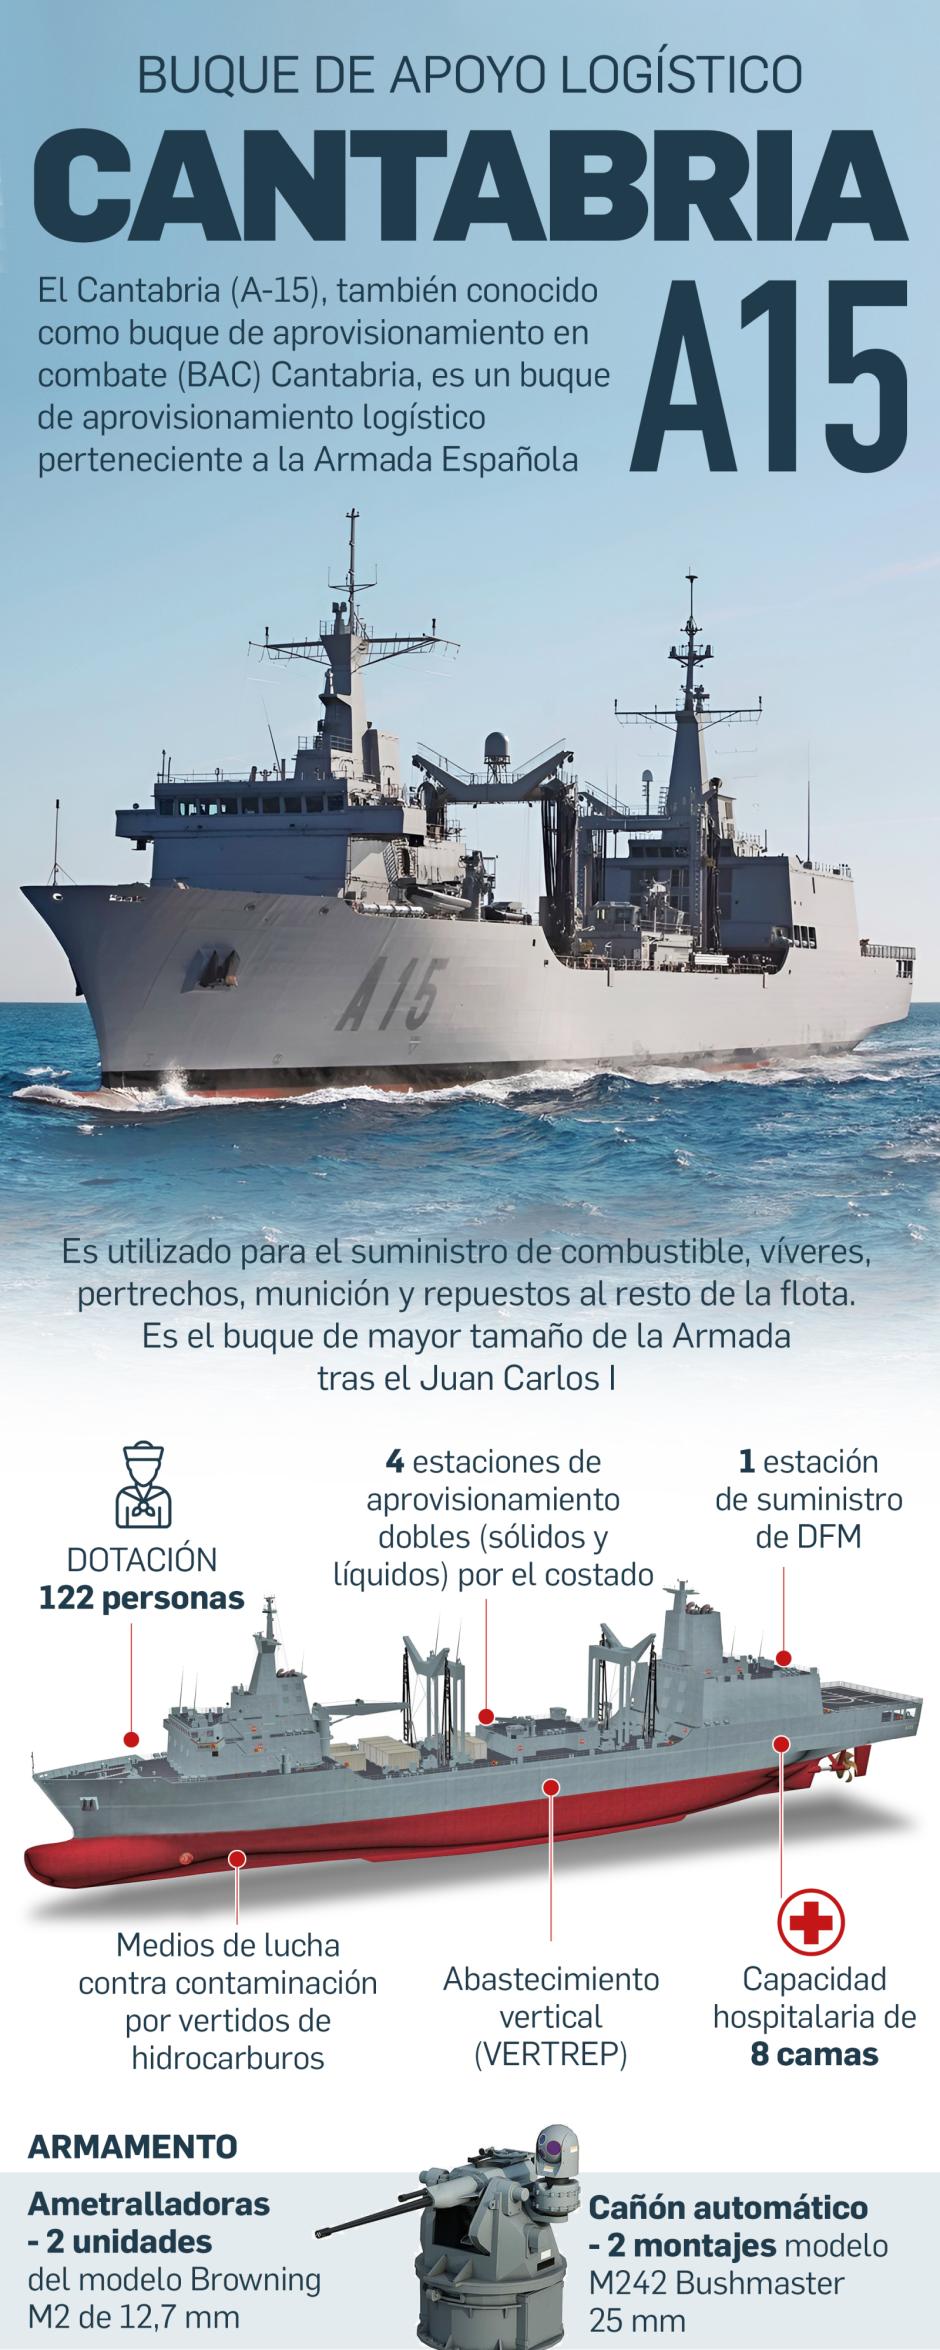 Buque Cantabria (A-15) de la Armada española